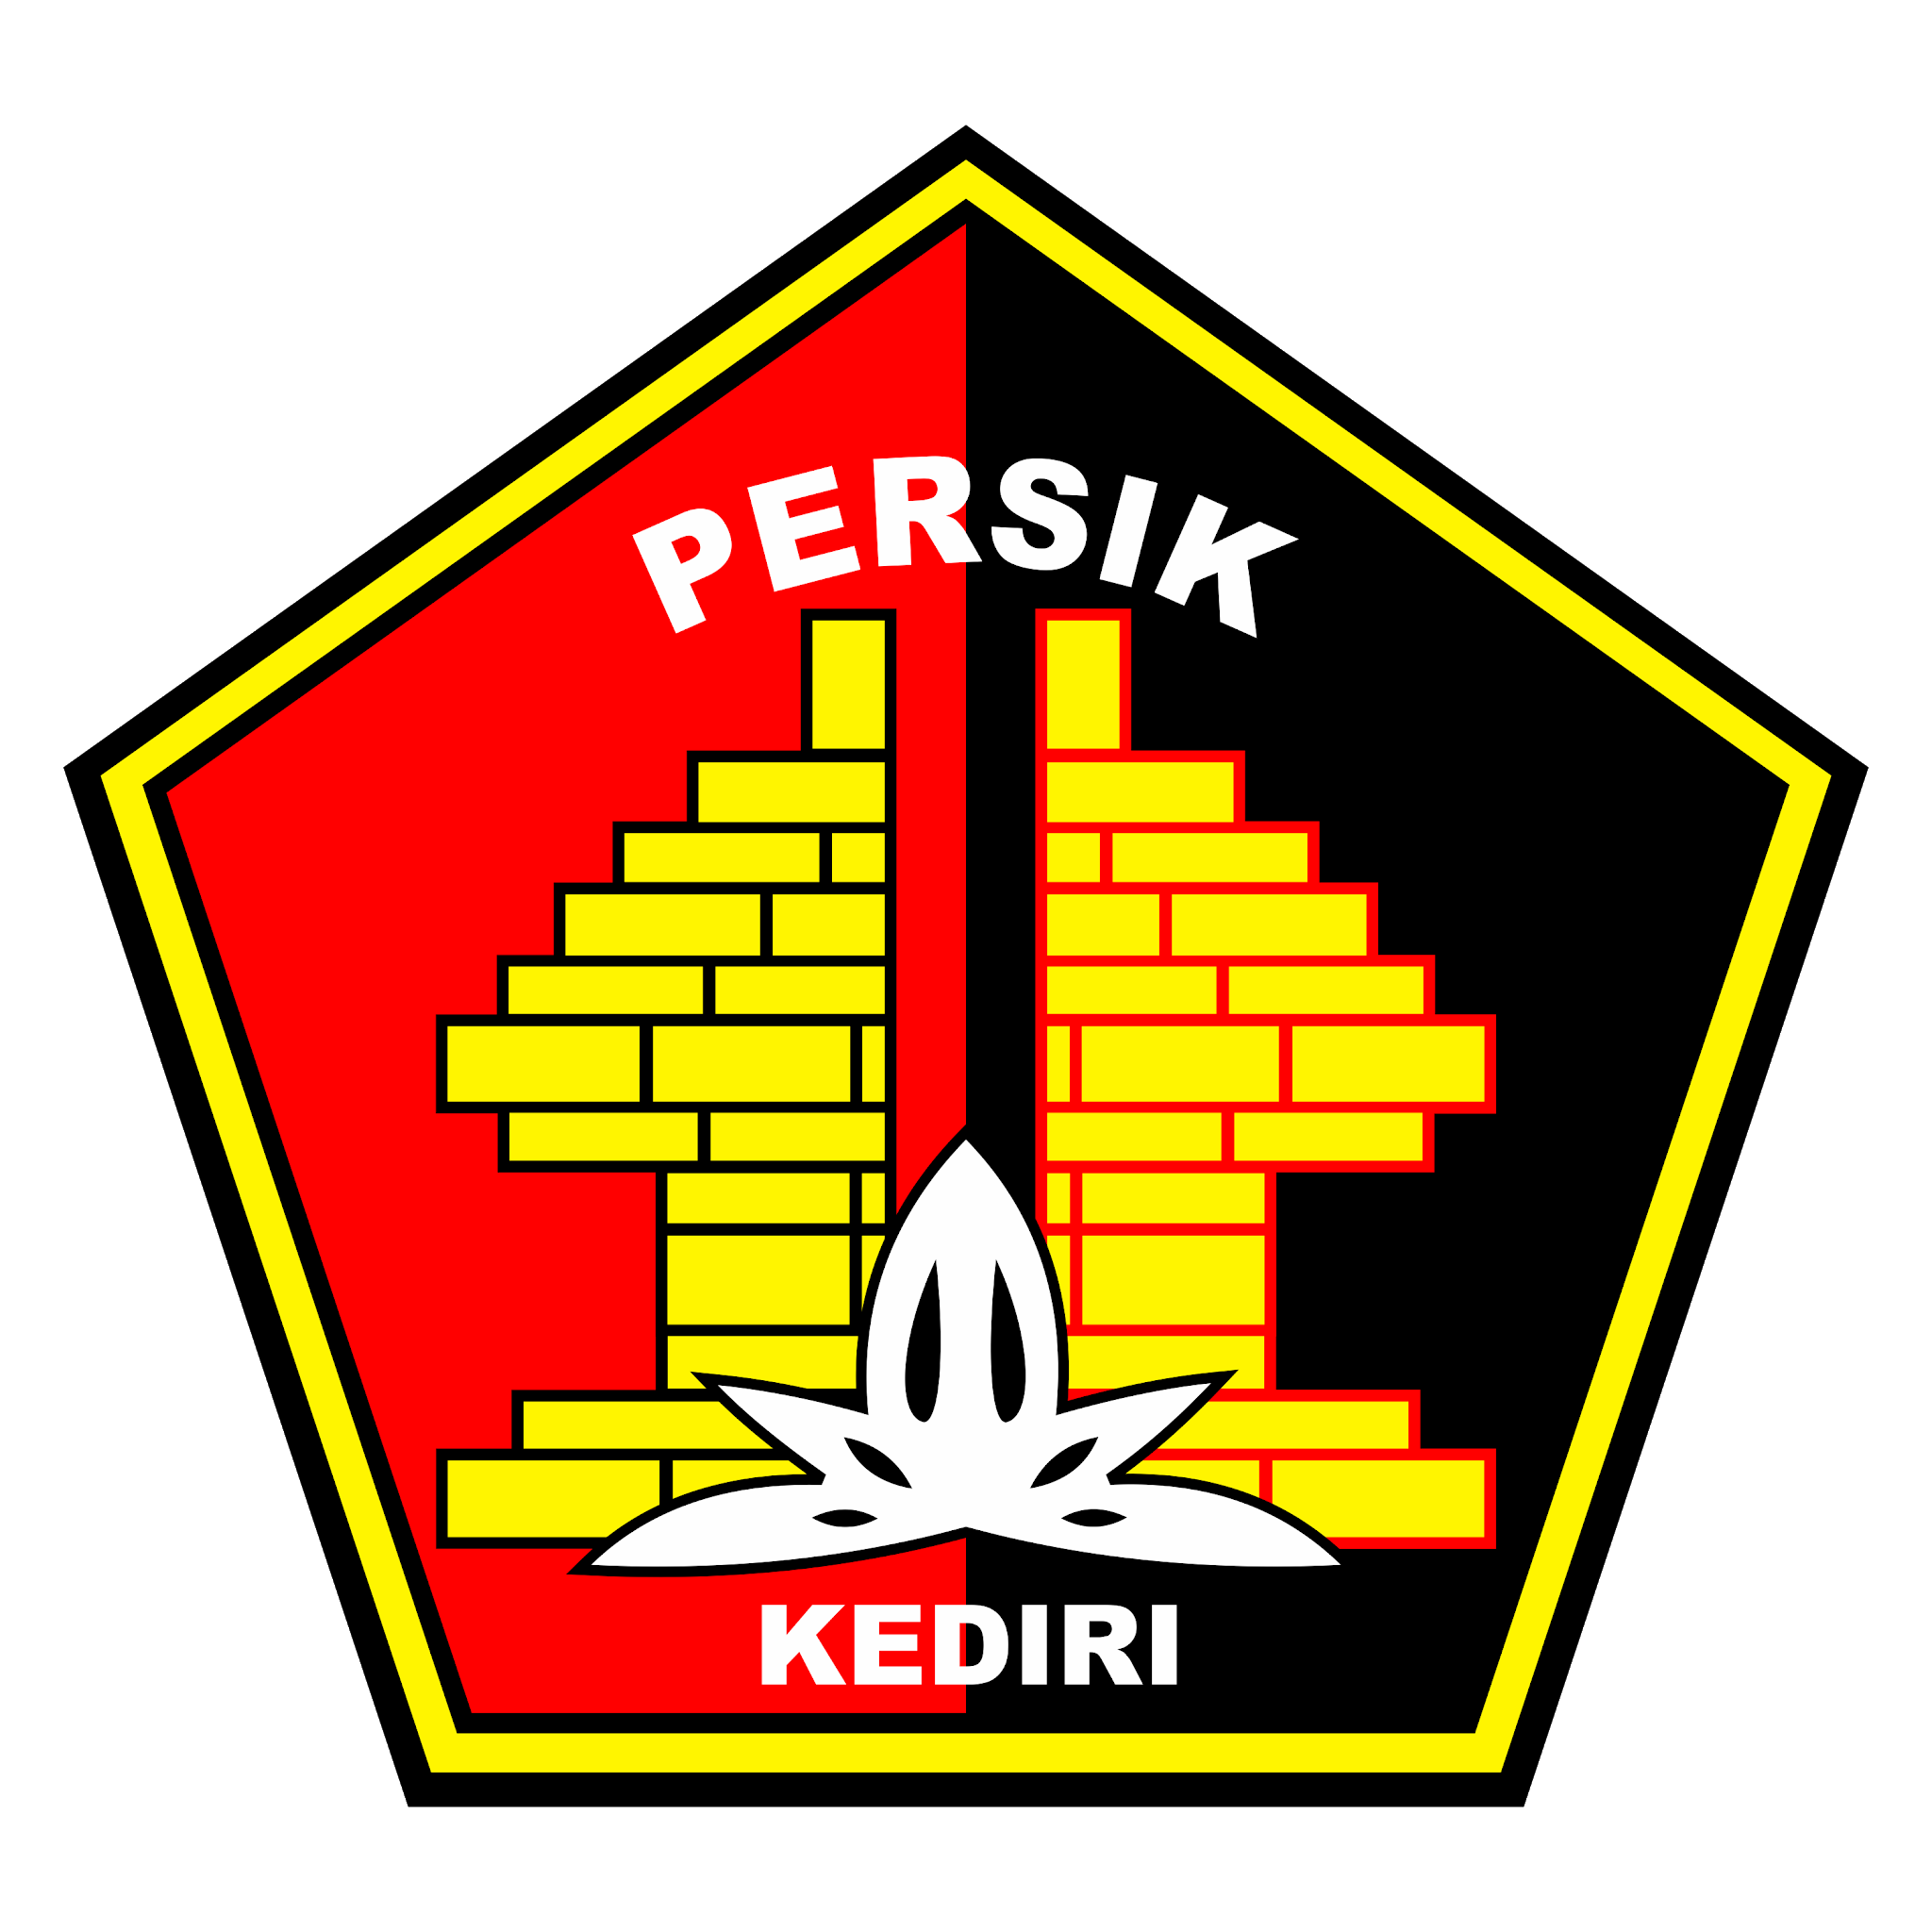 Logo Persik Kediri Format Vektor (CDR, EPS, AI, SVG, PNG)